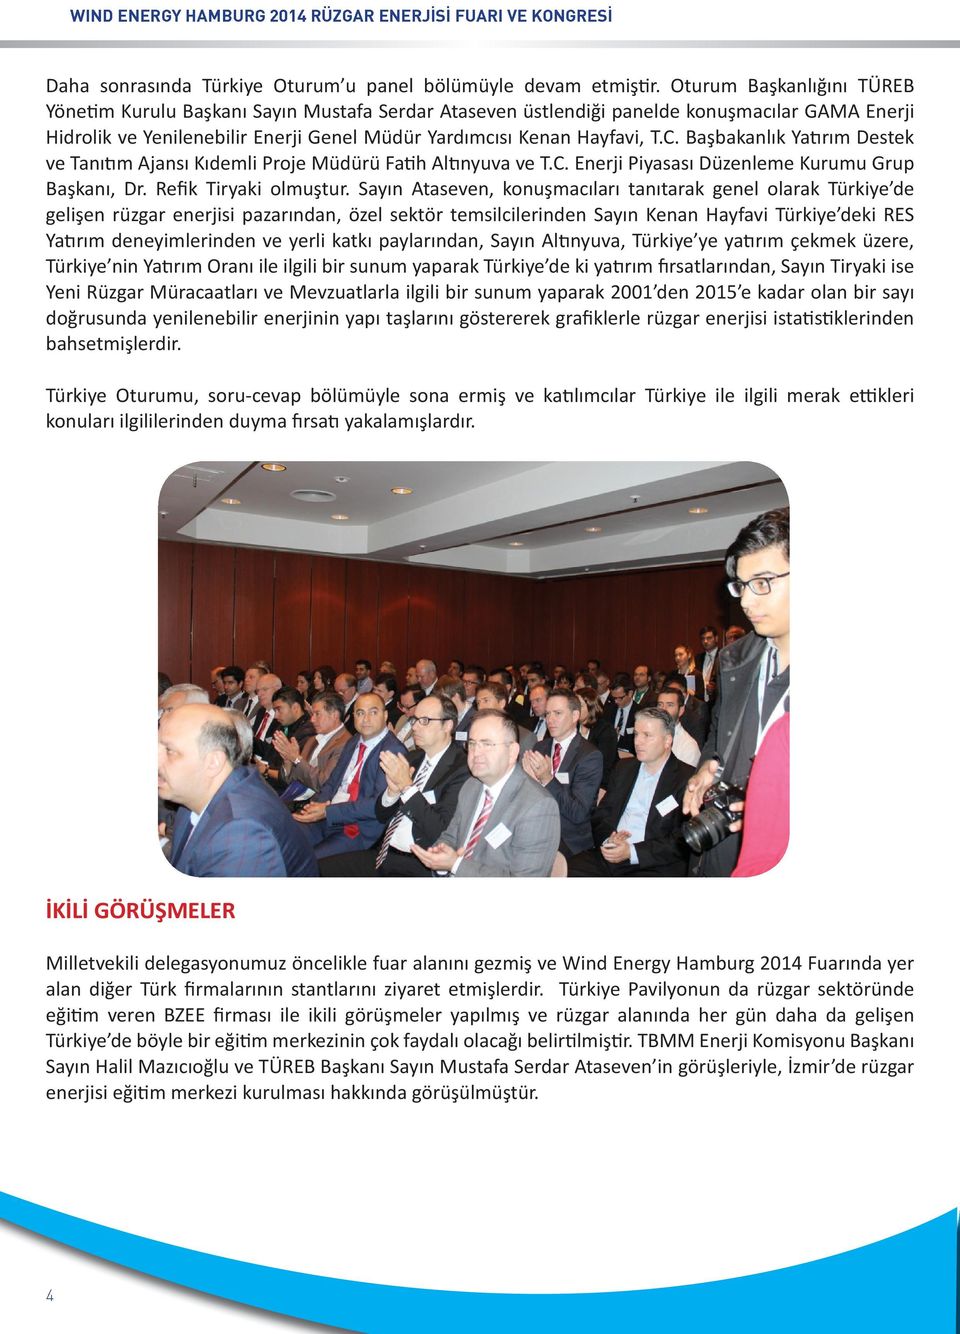 Başbakanlık Yatırım Destek ve Tanıtım Ajansı Kıdemli Proje Müdürü Fatih Altınyuva ve T.C. Enerji Piyasası Düzenleme Kurumu Grup Başkanı, Dr. Refik Tiryaki olmuştur.